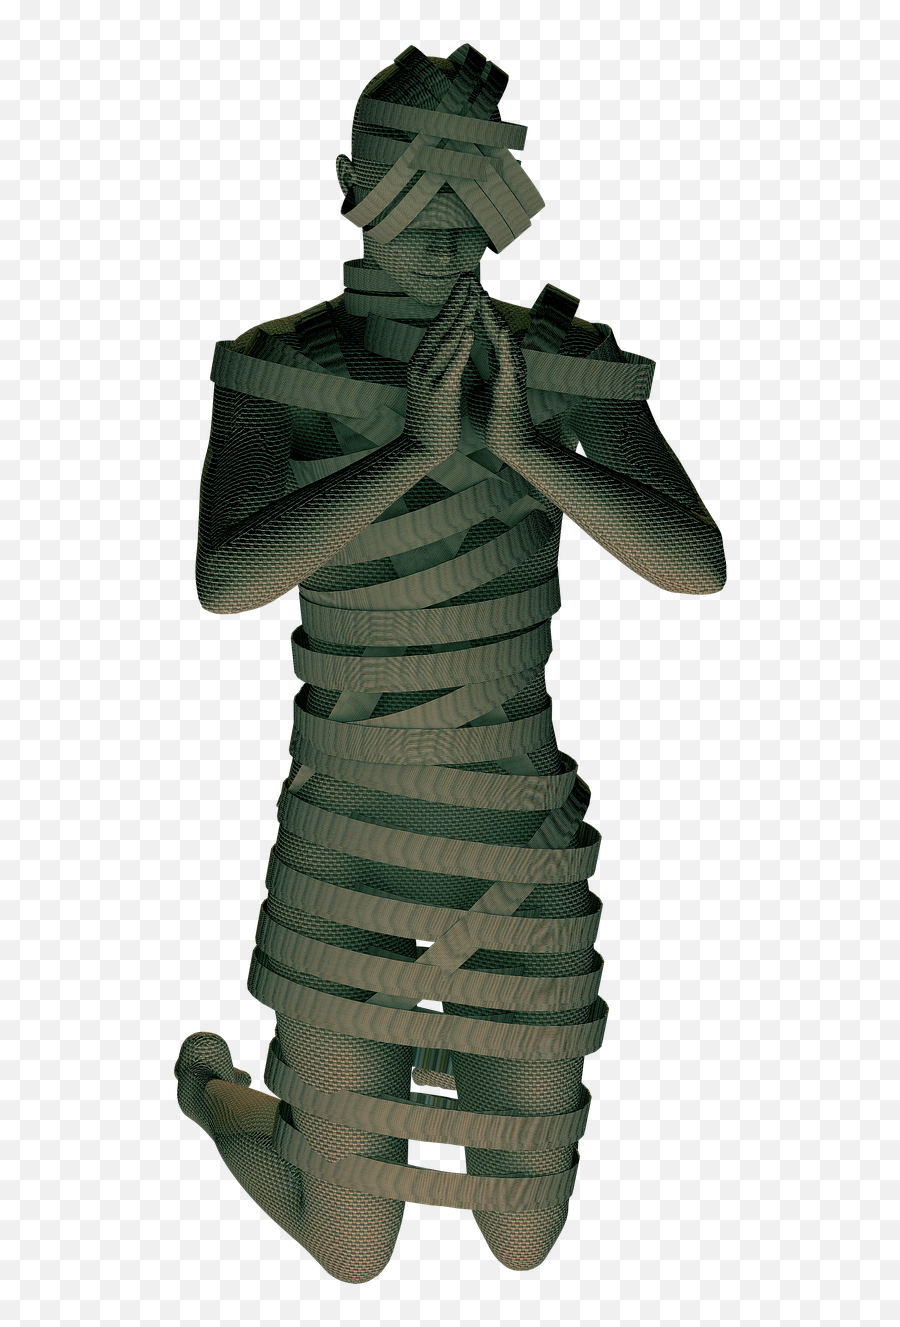 Mummy Pray Bandage - Free Image On Pixabay Emoji,Bandage Text Emoticon